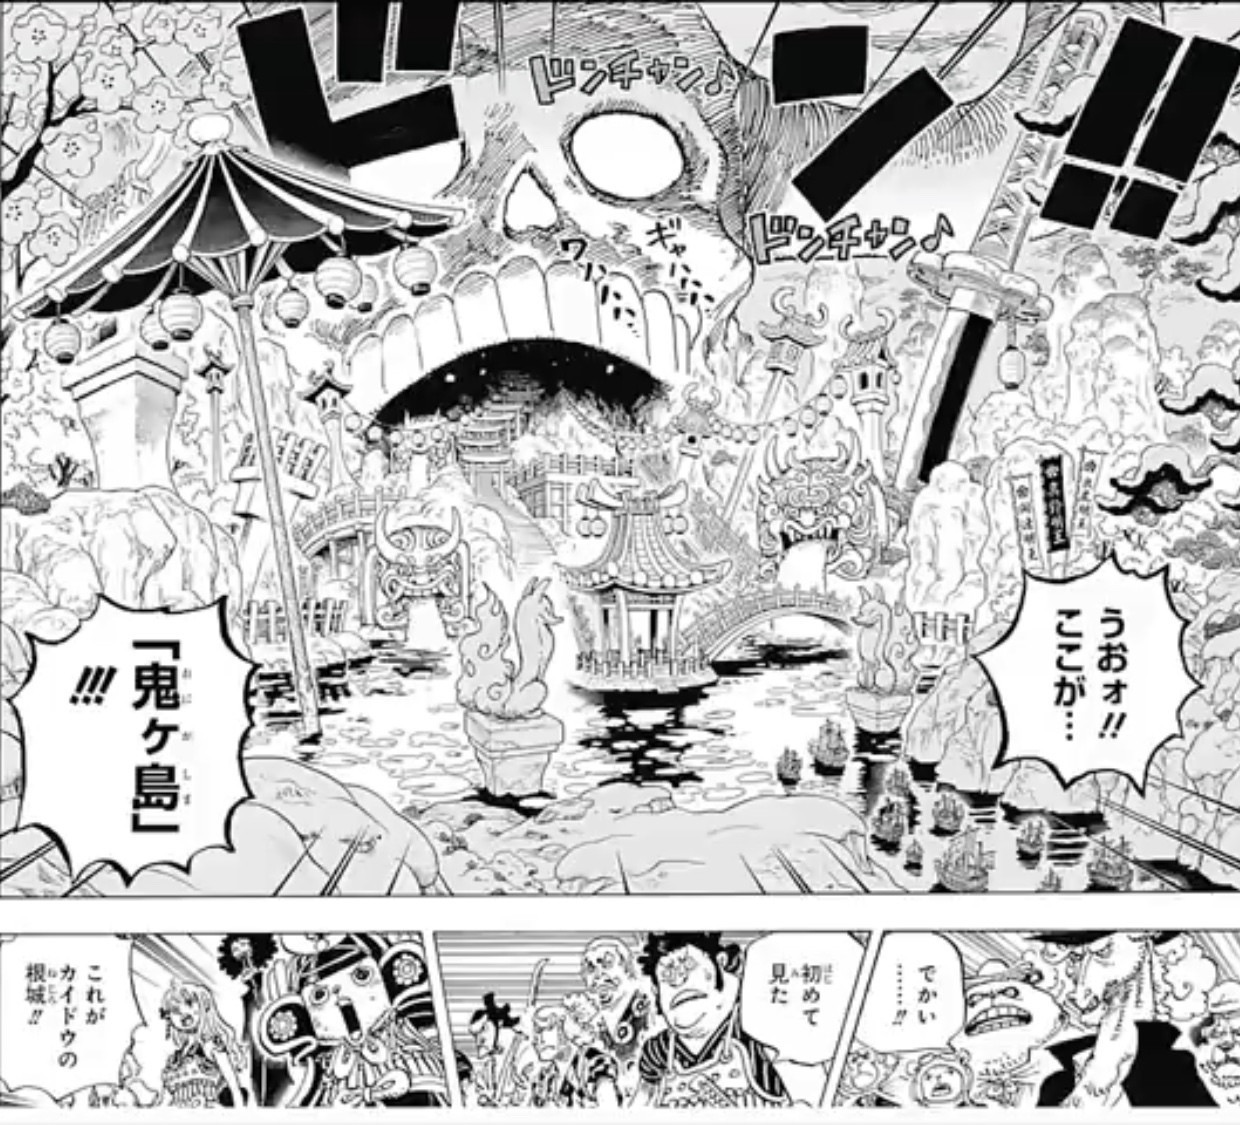 ワンピース 978 ワンピース 977 978話 日本語 年4月27日発売の週刊少年ジャンプ掲載漫画 One Piece 最新977 978話